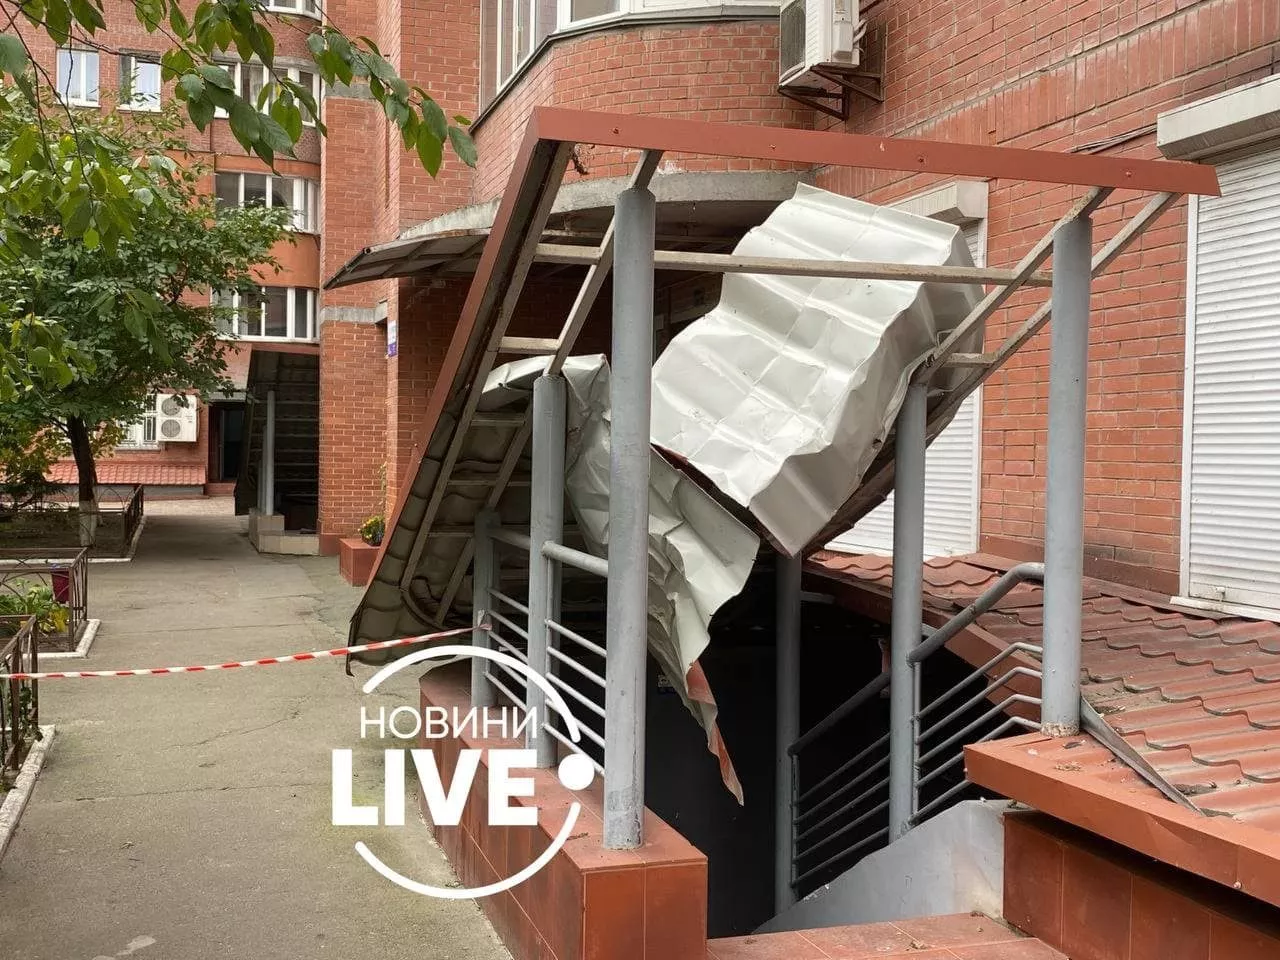 У Дарницькому районі столиці з вікна багатоповерхівки випала жінка / Фото: Новини LIVE